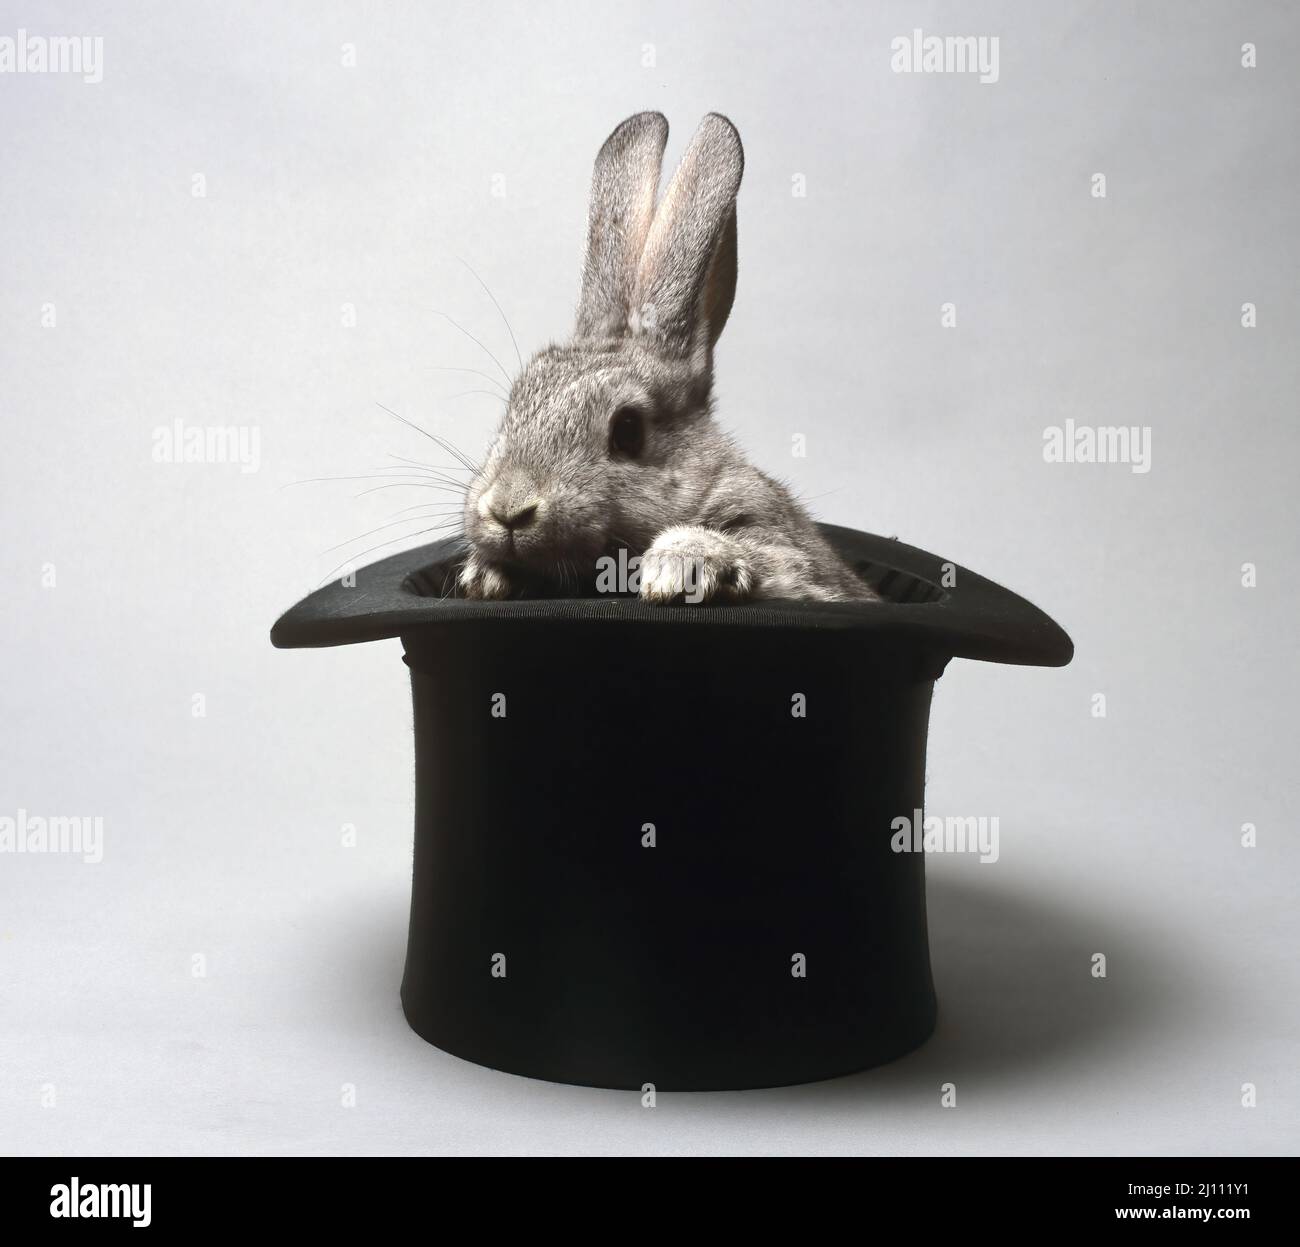 Kaninchen schaut aus dem Zylinder Foto Stock